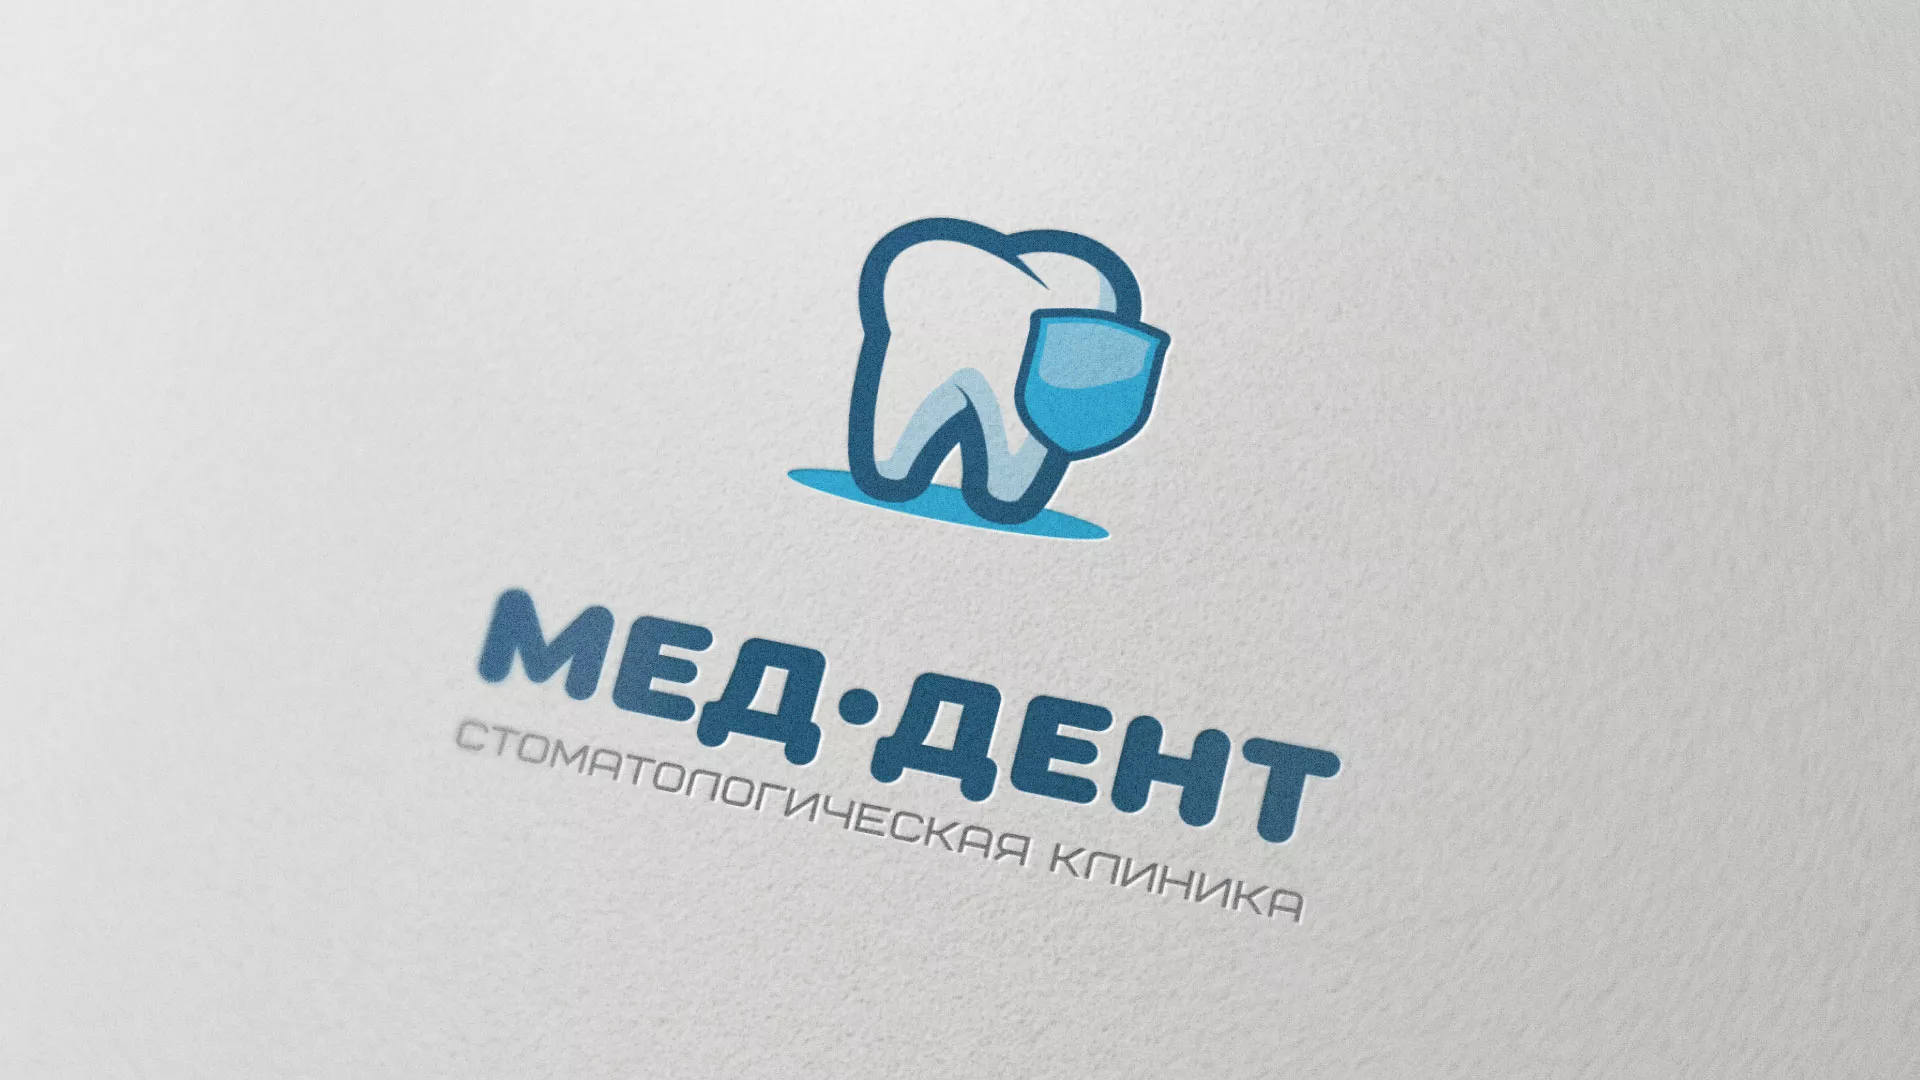 Разработка логотипа стоматологической клиники «МЕД-ДЕНТ» в Шебекино